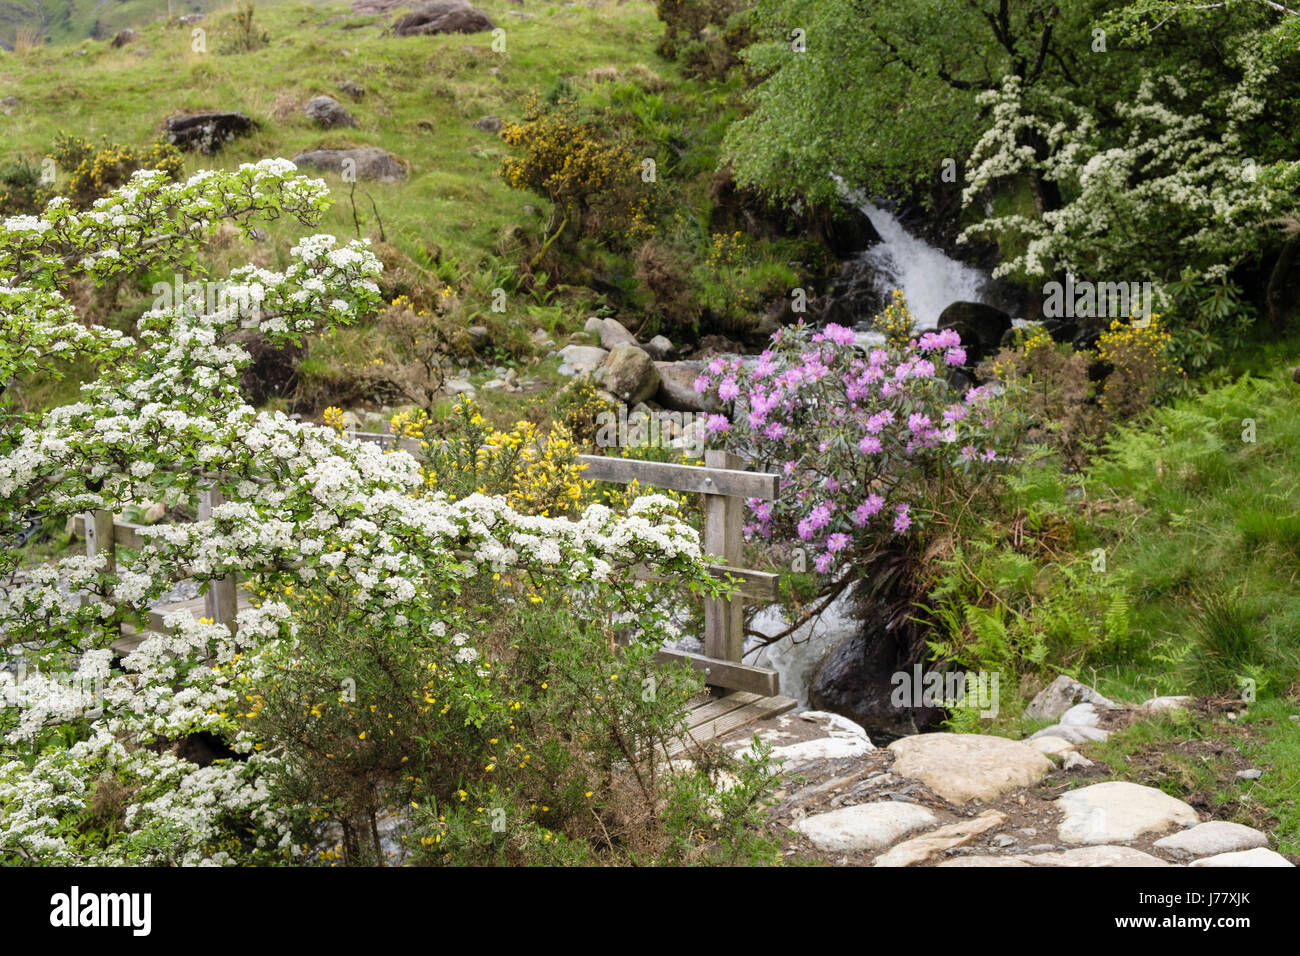 Fioritura biancospino (Crataegus monogyna) boccola fiori accanto a un sentiero nella tarda primavera inizio estate. Cwm Dyli Nant Gwynant Gwynedd Wales UK Gran Bretagna Foto Stock